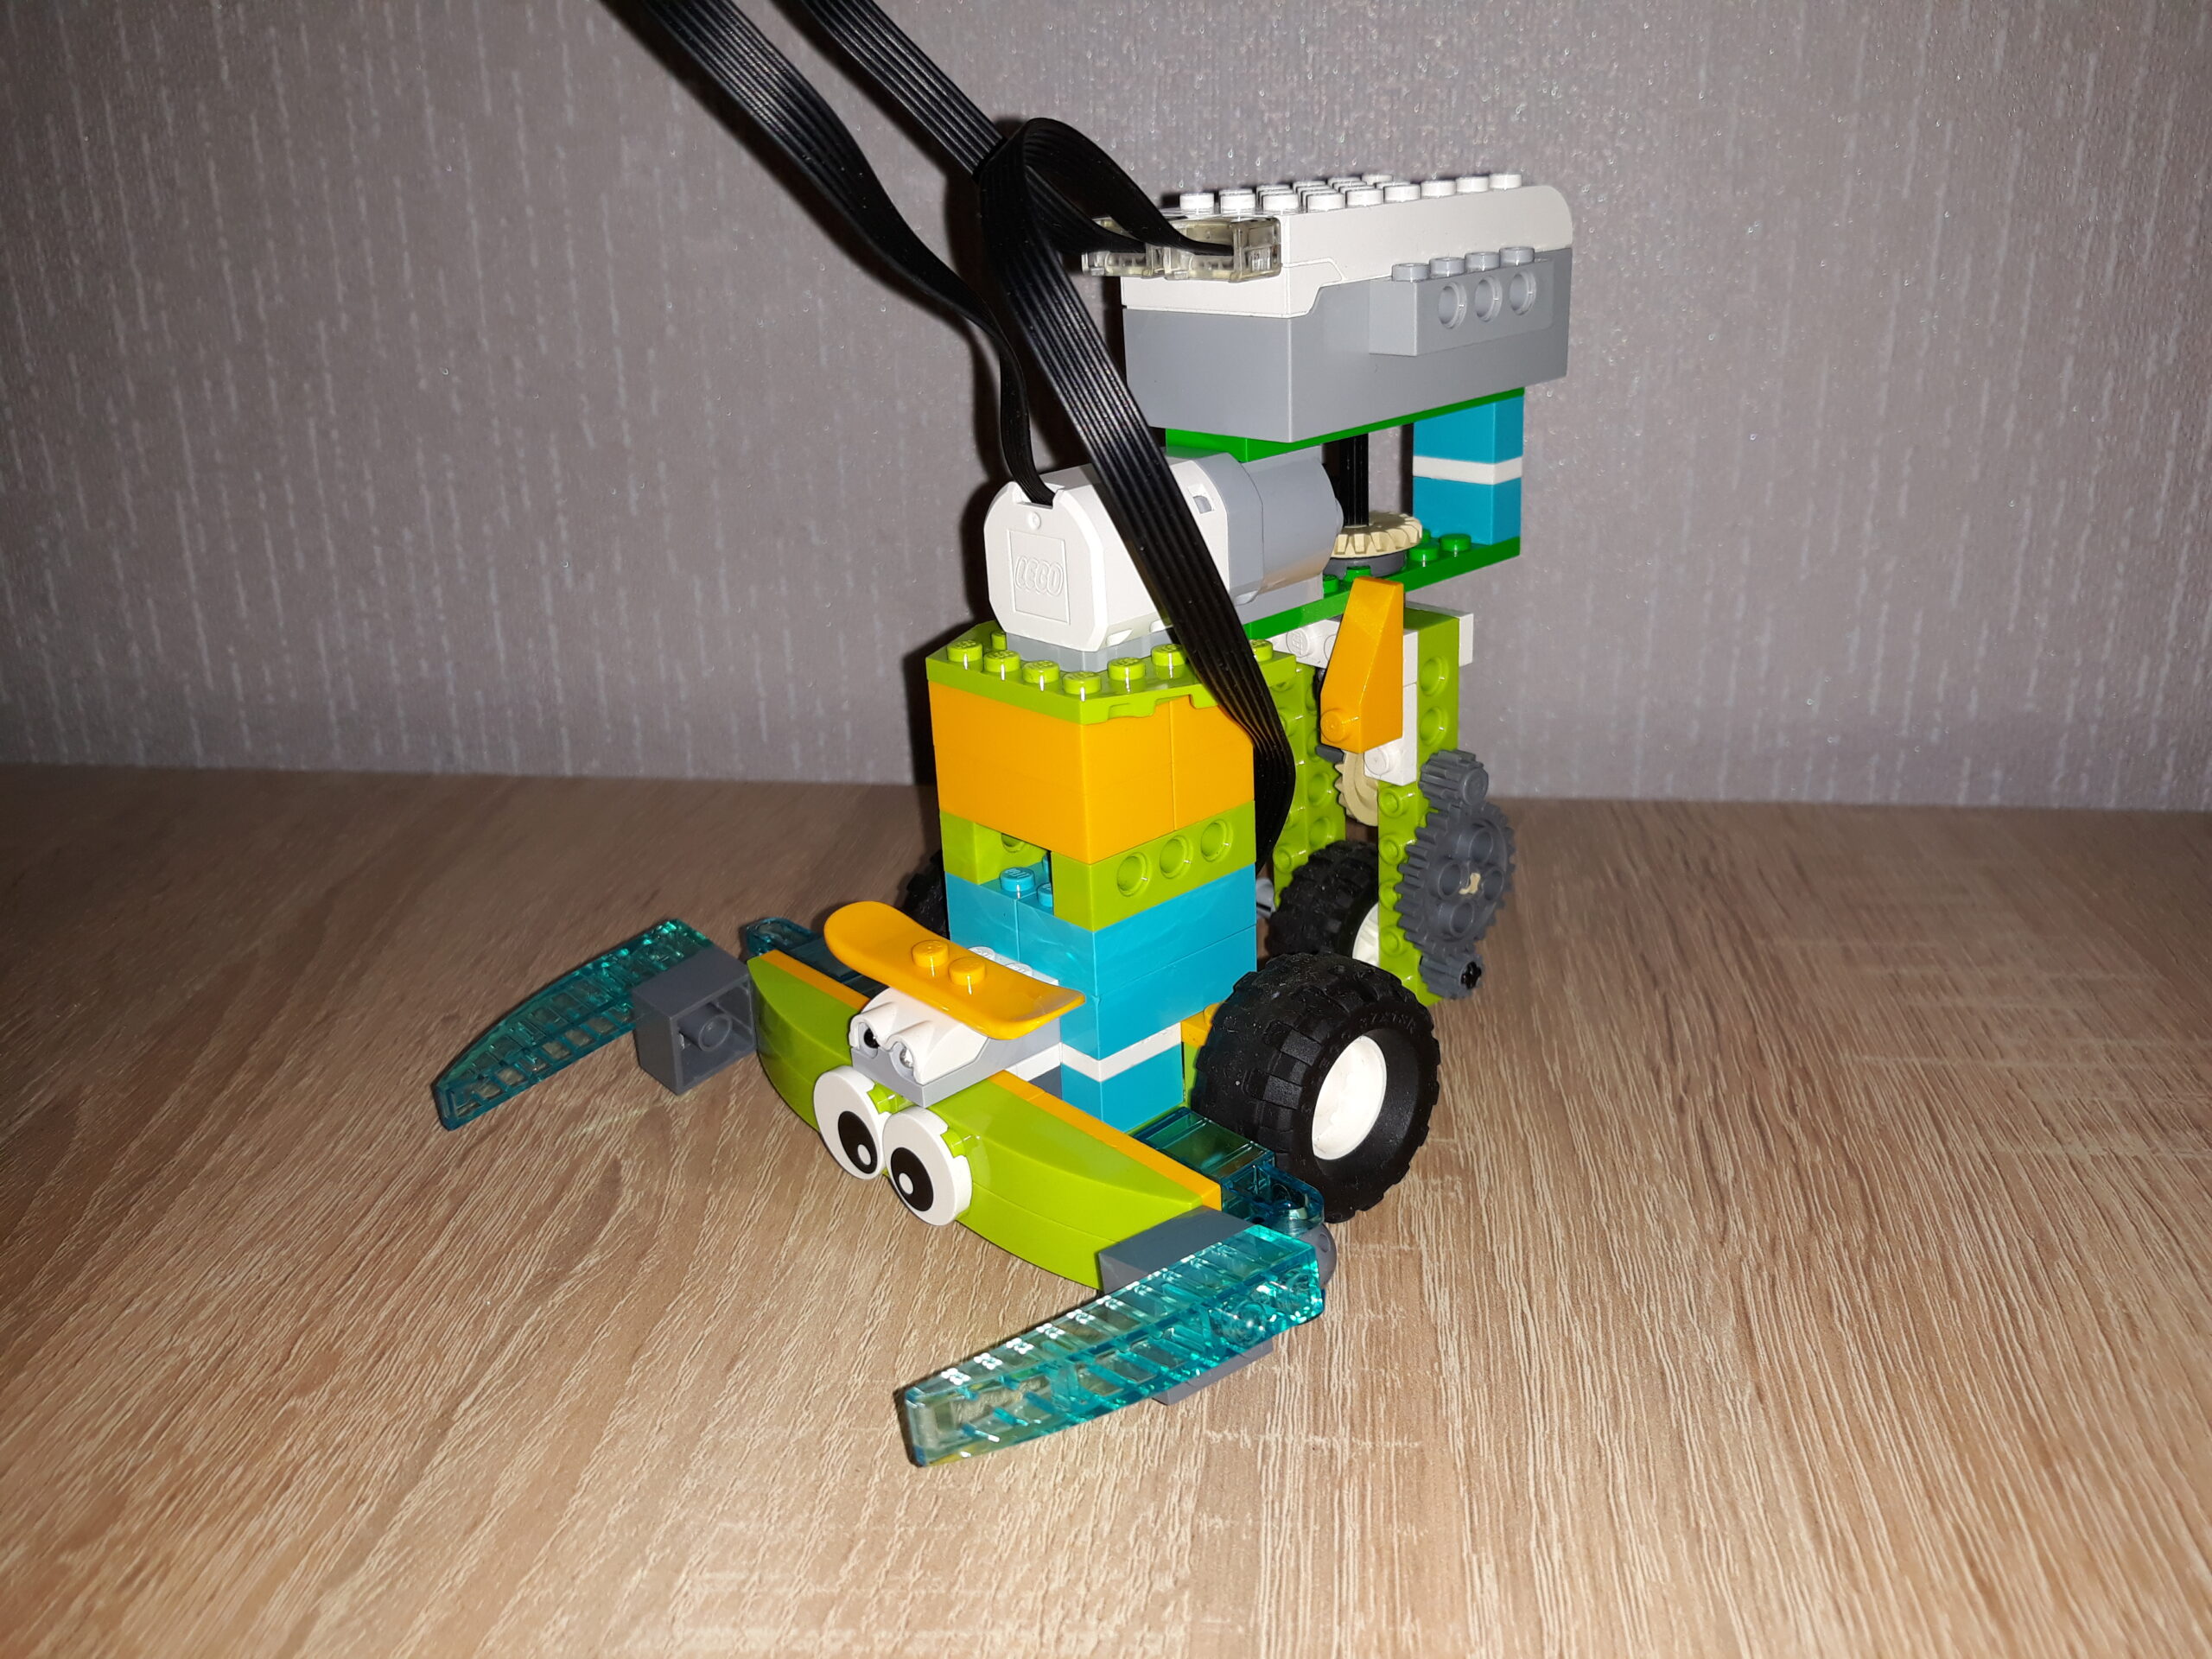 Инструкция по сборке из набора LEGO Education WeDo 2.0 Скорпион